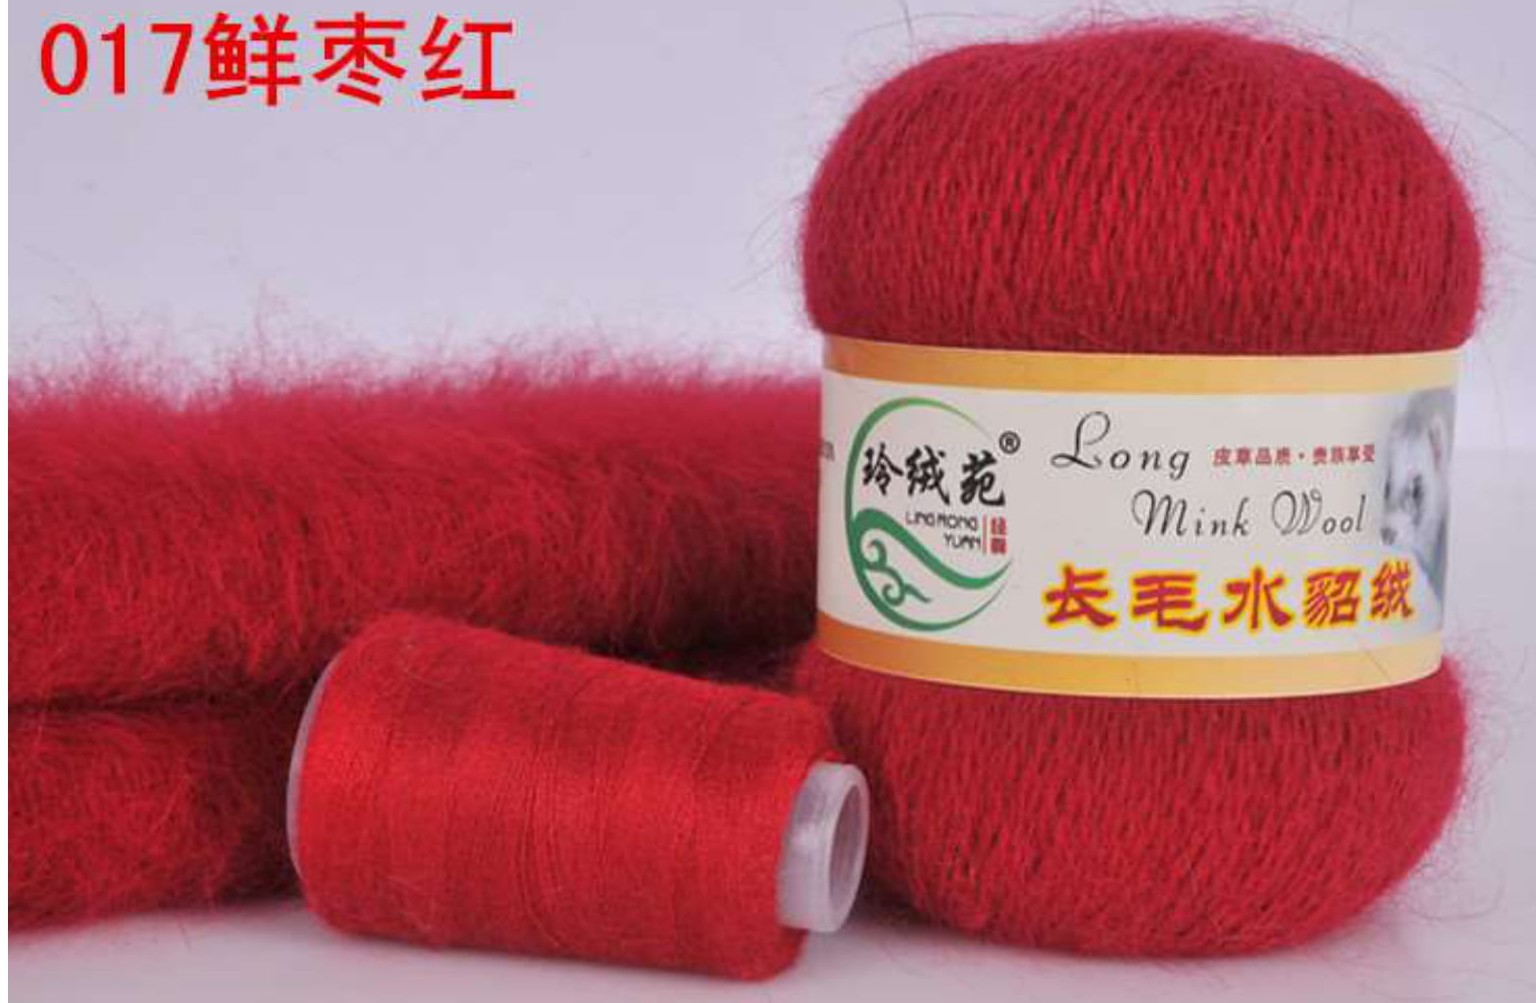 Пряжа Норка длинноворсовая (Long Mink Wool) 17 - ярко-красный